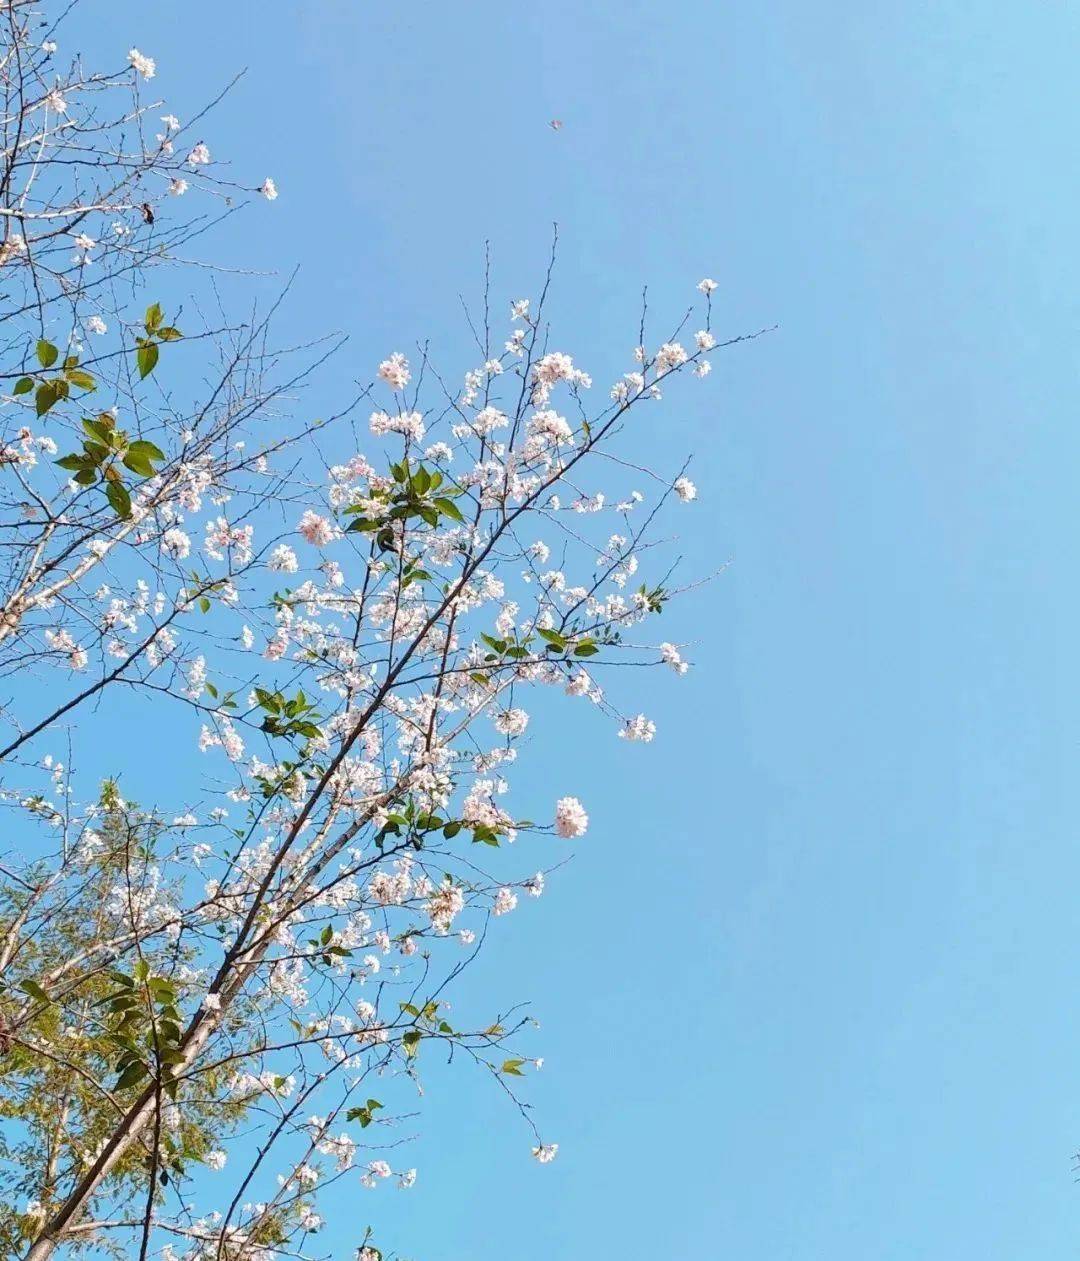 樱花园也是石峰公园的一大特色,此时的樱花已经迎风开放了,一簇簇展开